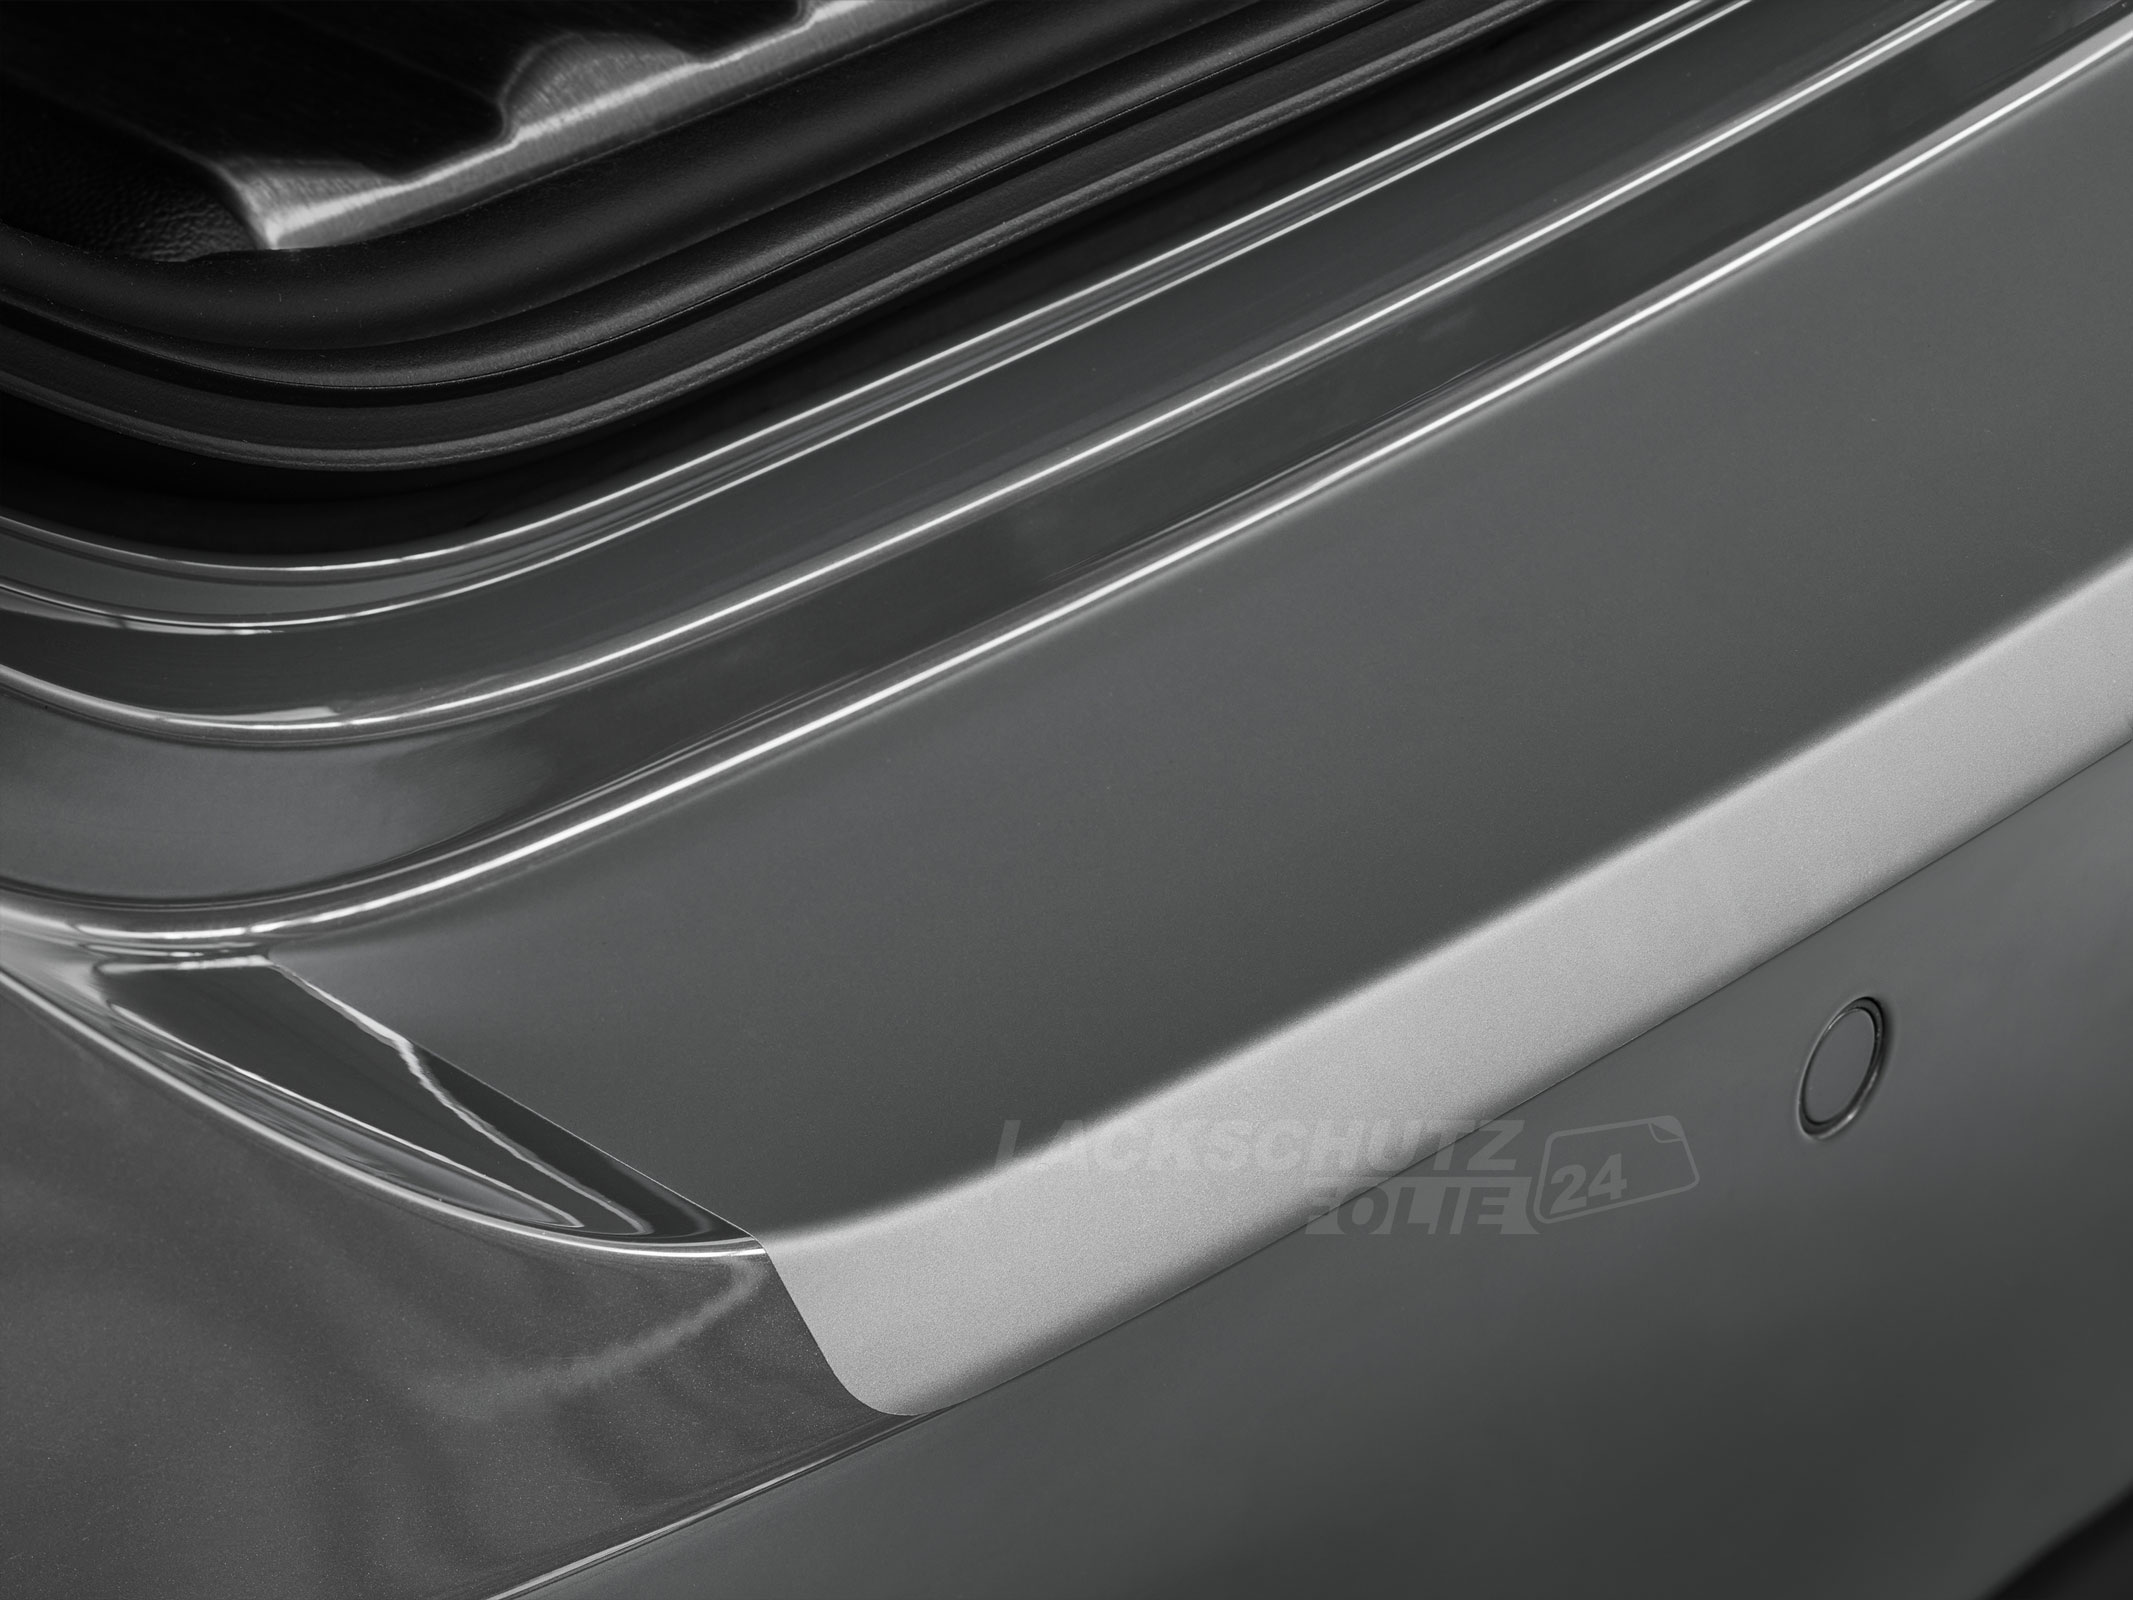 Ladekantenschutzfolie - Transparent Glatt MATT 110 µm stark  für Audi A3 Sportback Typ 8PA, Facelift, BJ 2008-02/2013